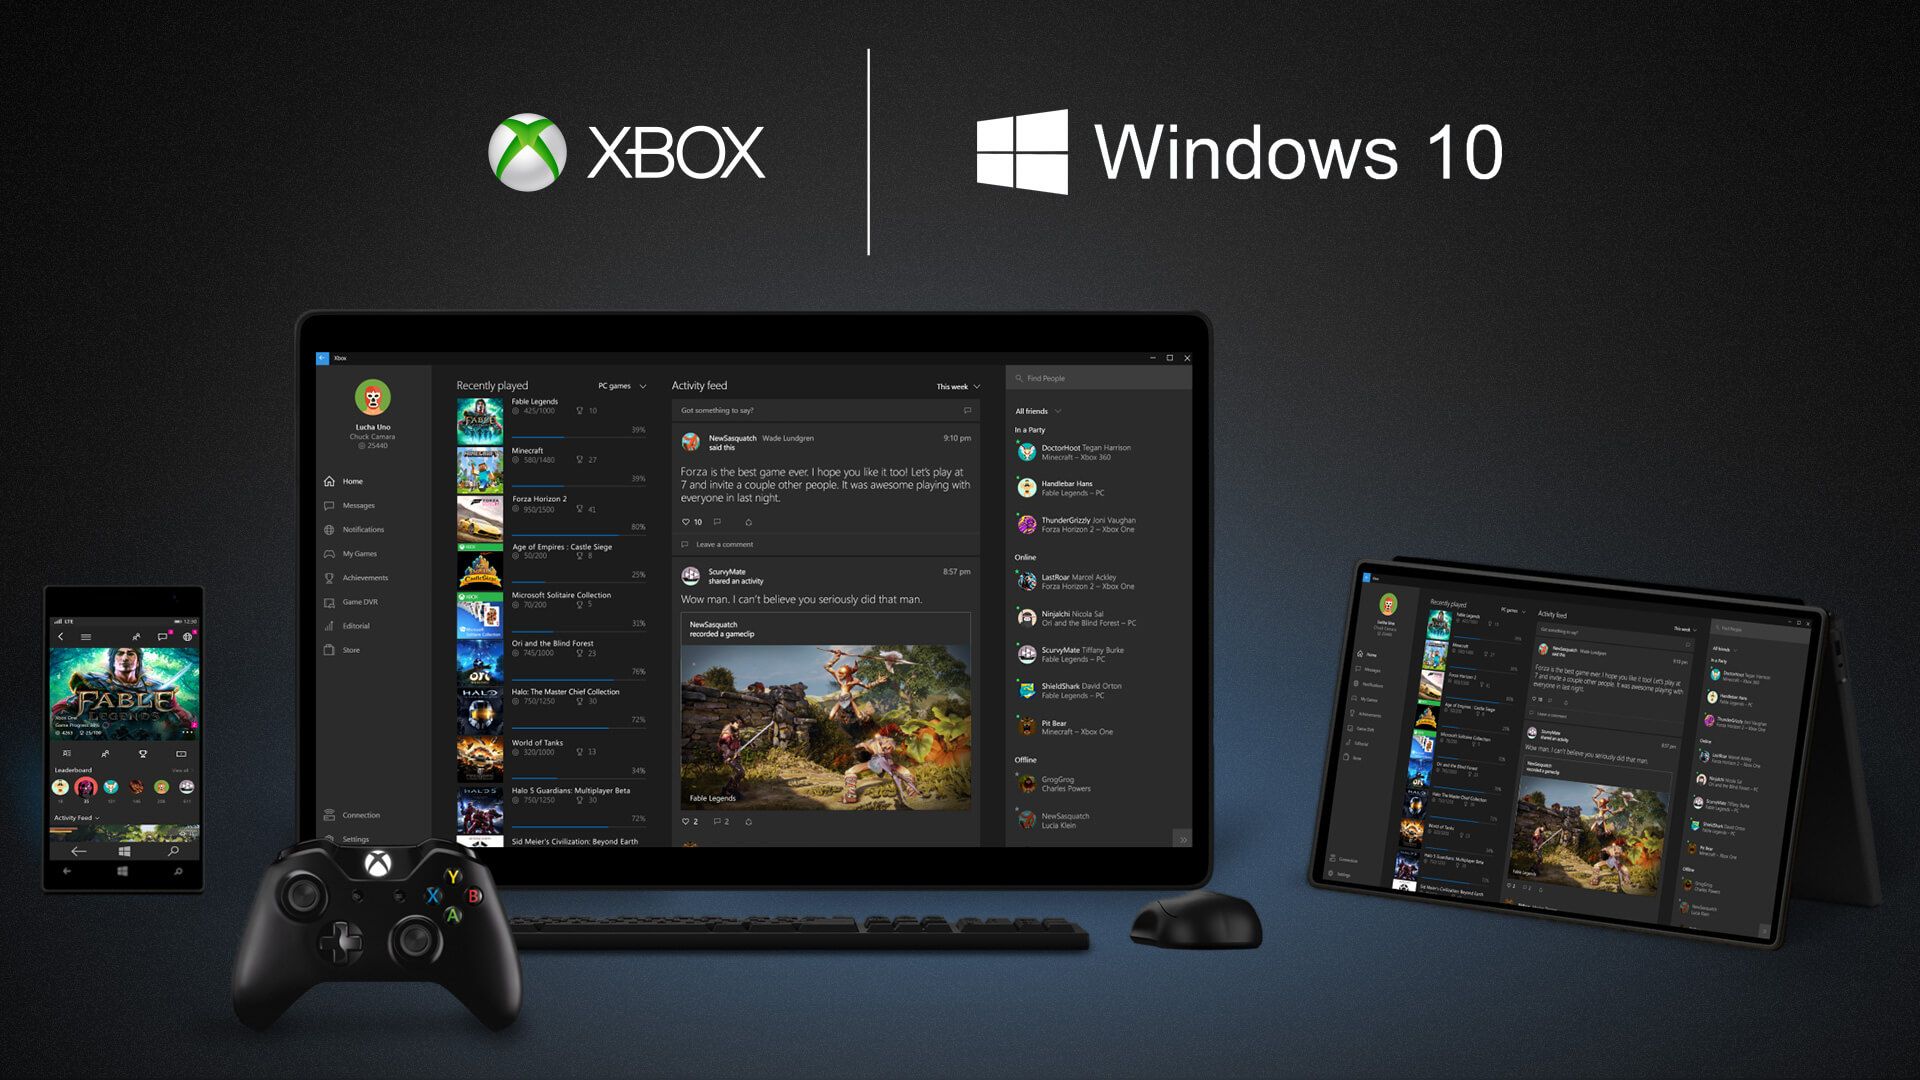 Xbox App On Windows 10 Devices